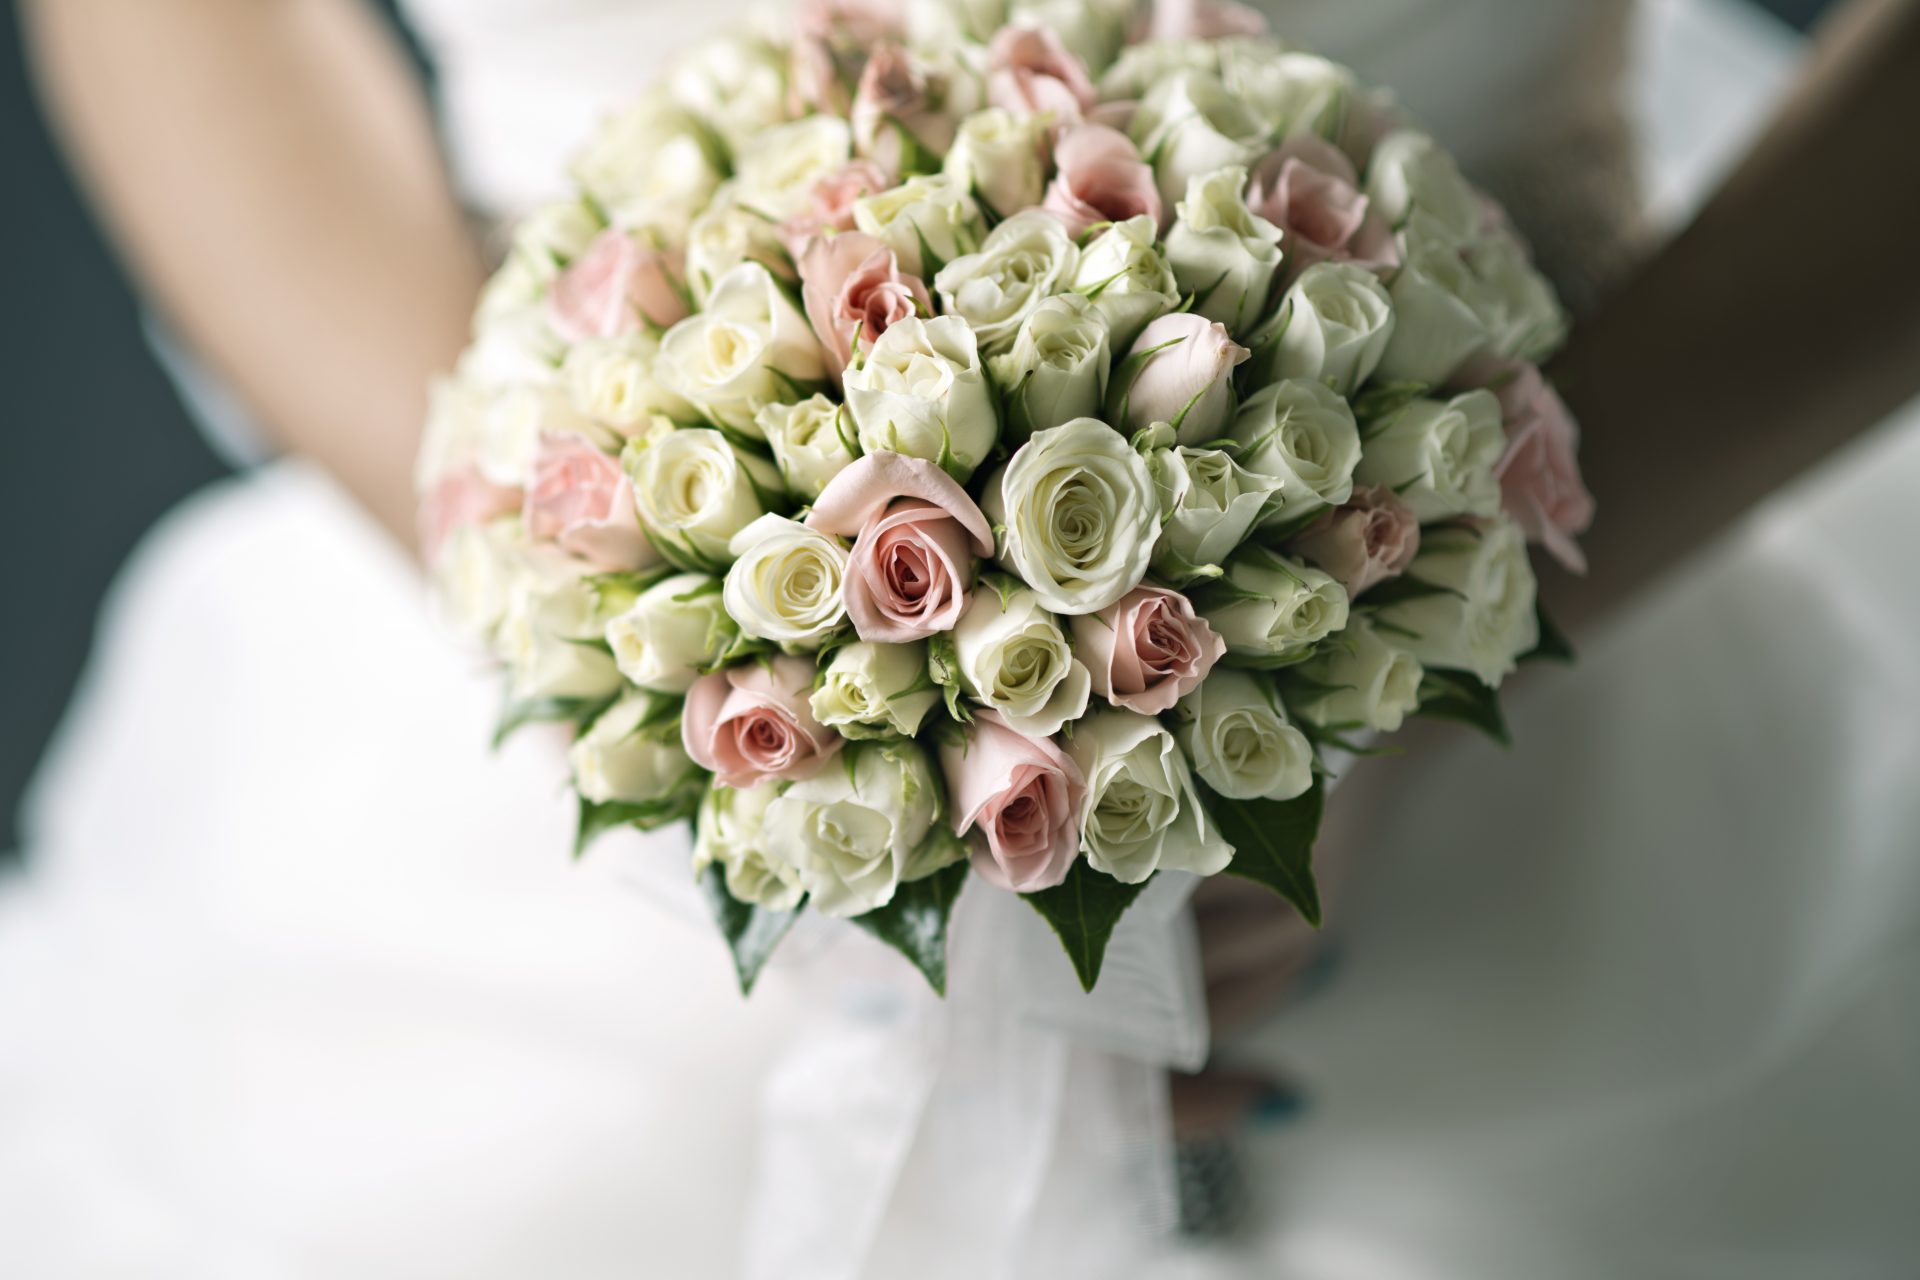 Perché le spose usano i bouquet? Le ragioni (a volte bizzarre) dei rituali matrimoniali